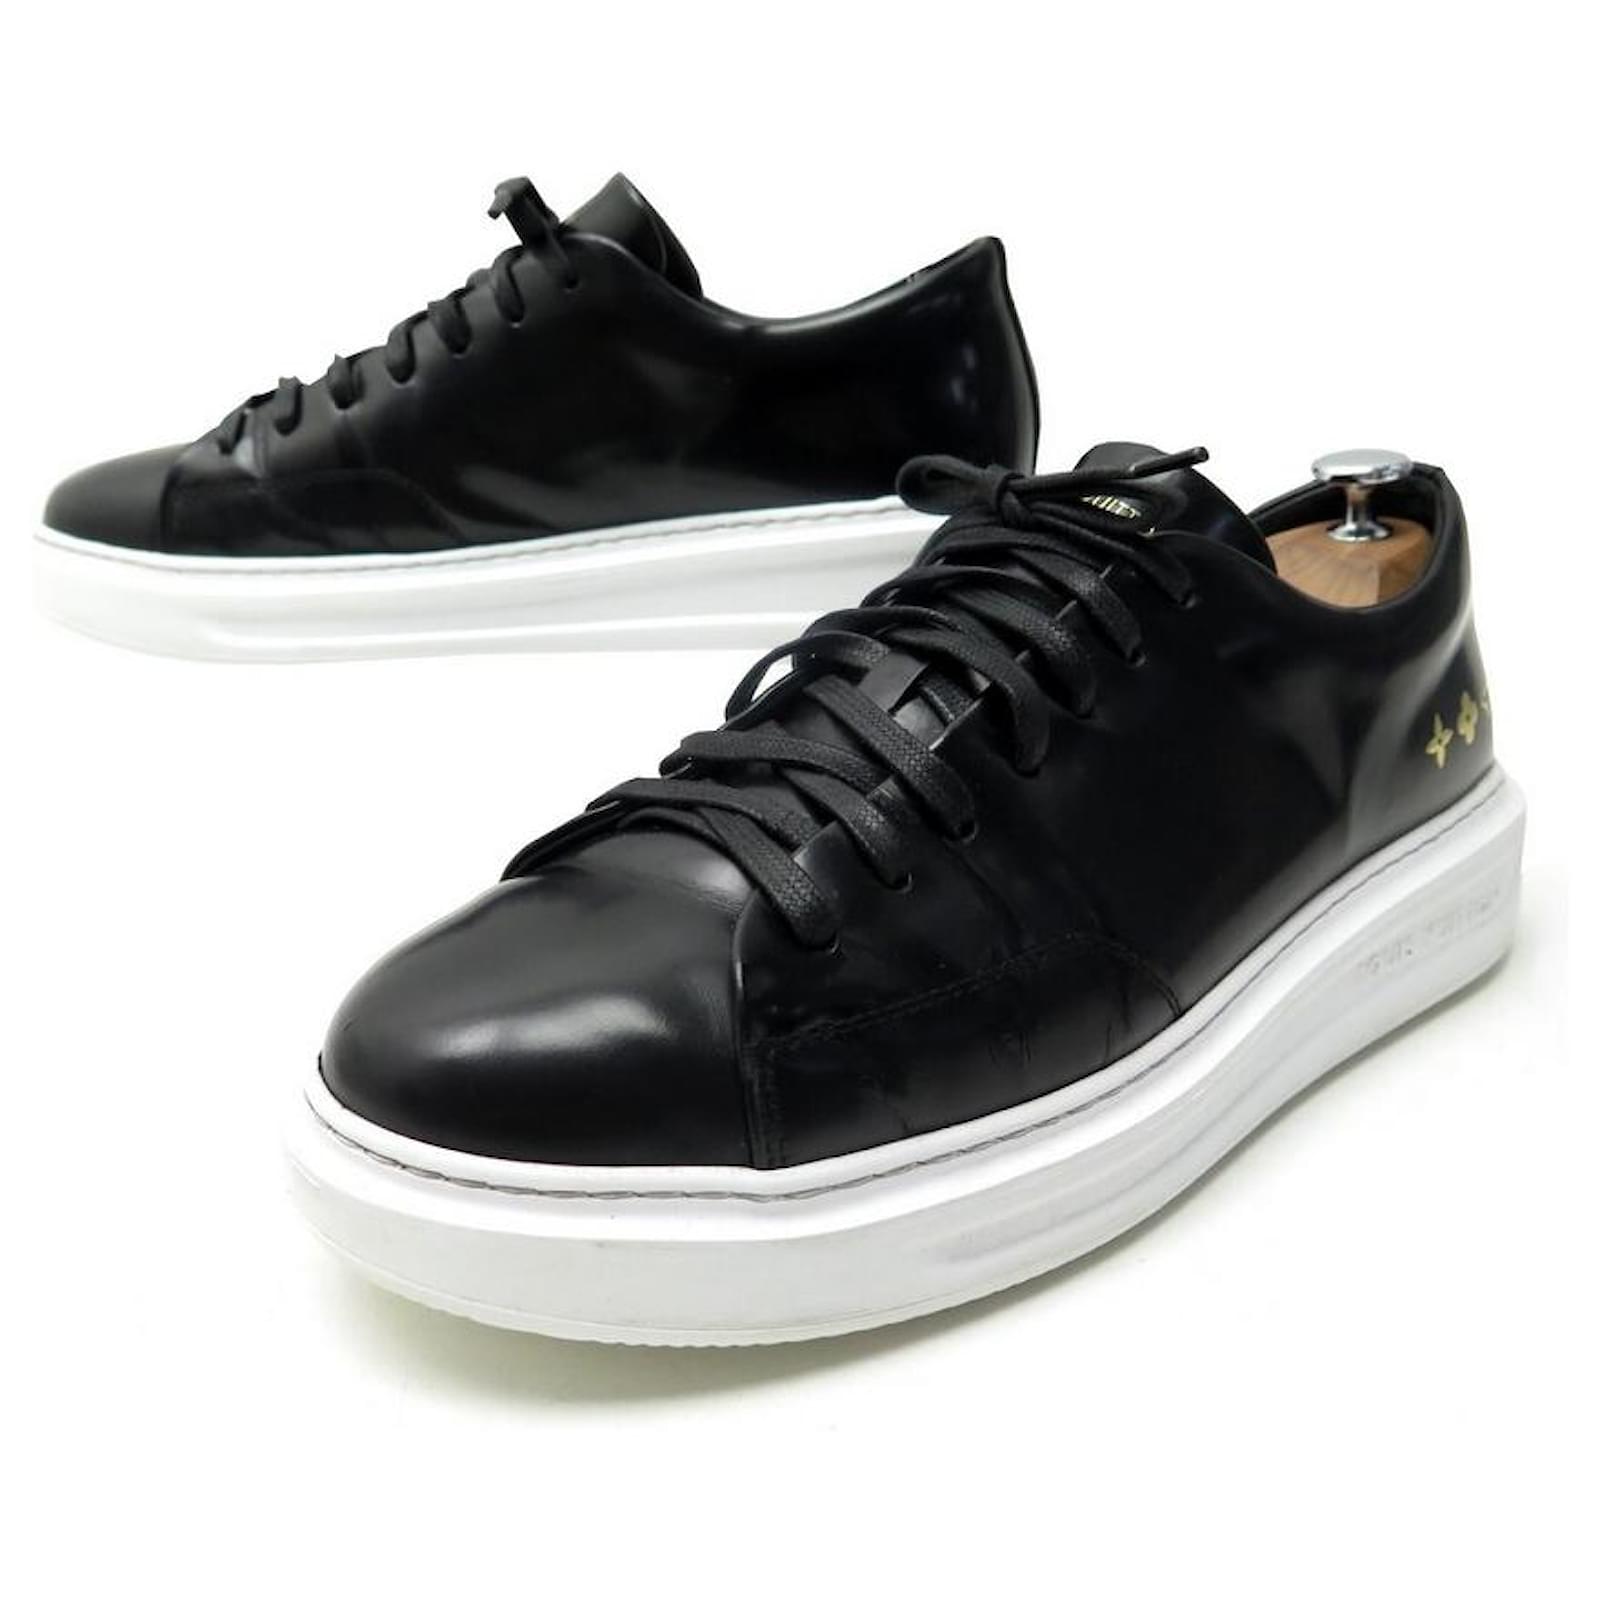 Sneakers Louis Vuitton Chaussures Ultra Class - Couleur Noir Pour Homme  GJ0058 - Sodishop